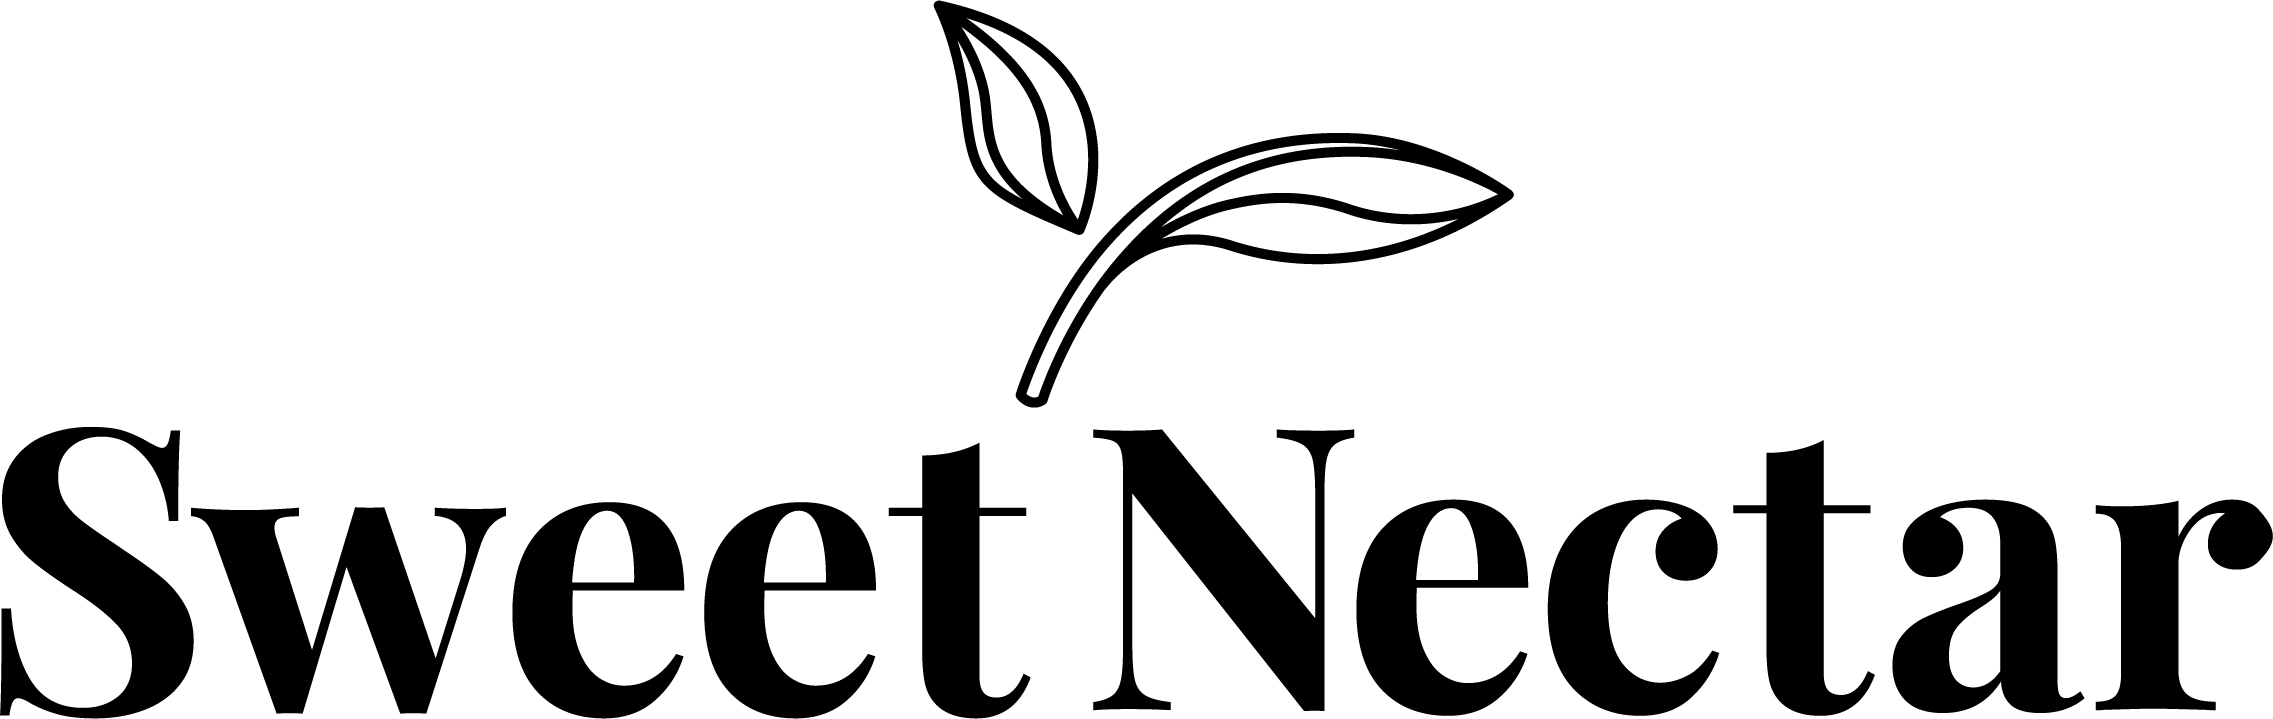 SND-Logo-Black.png